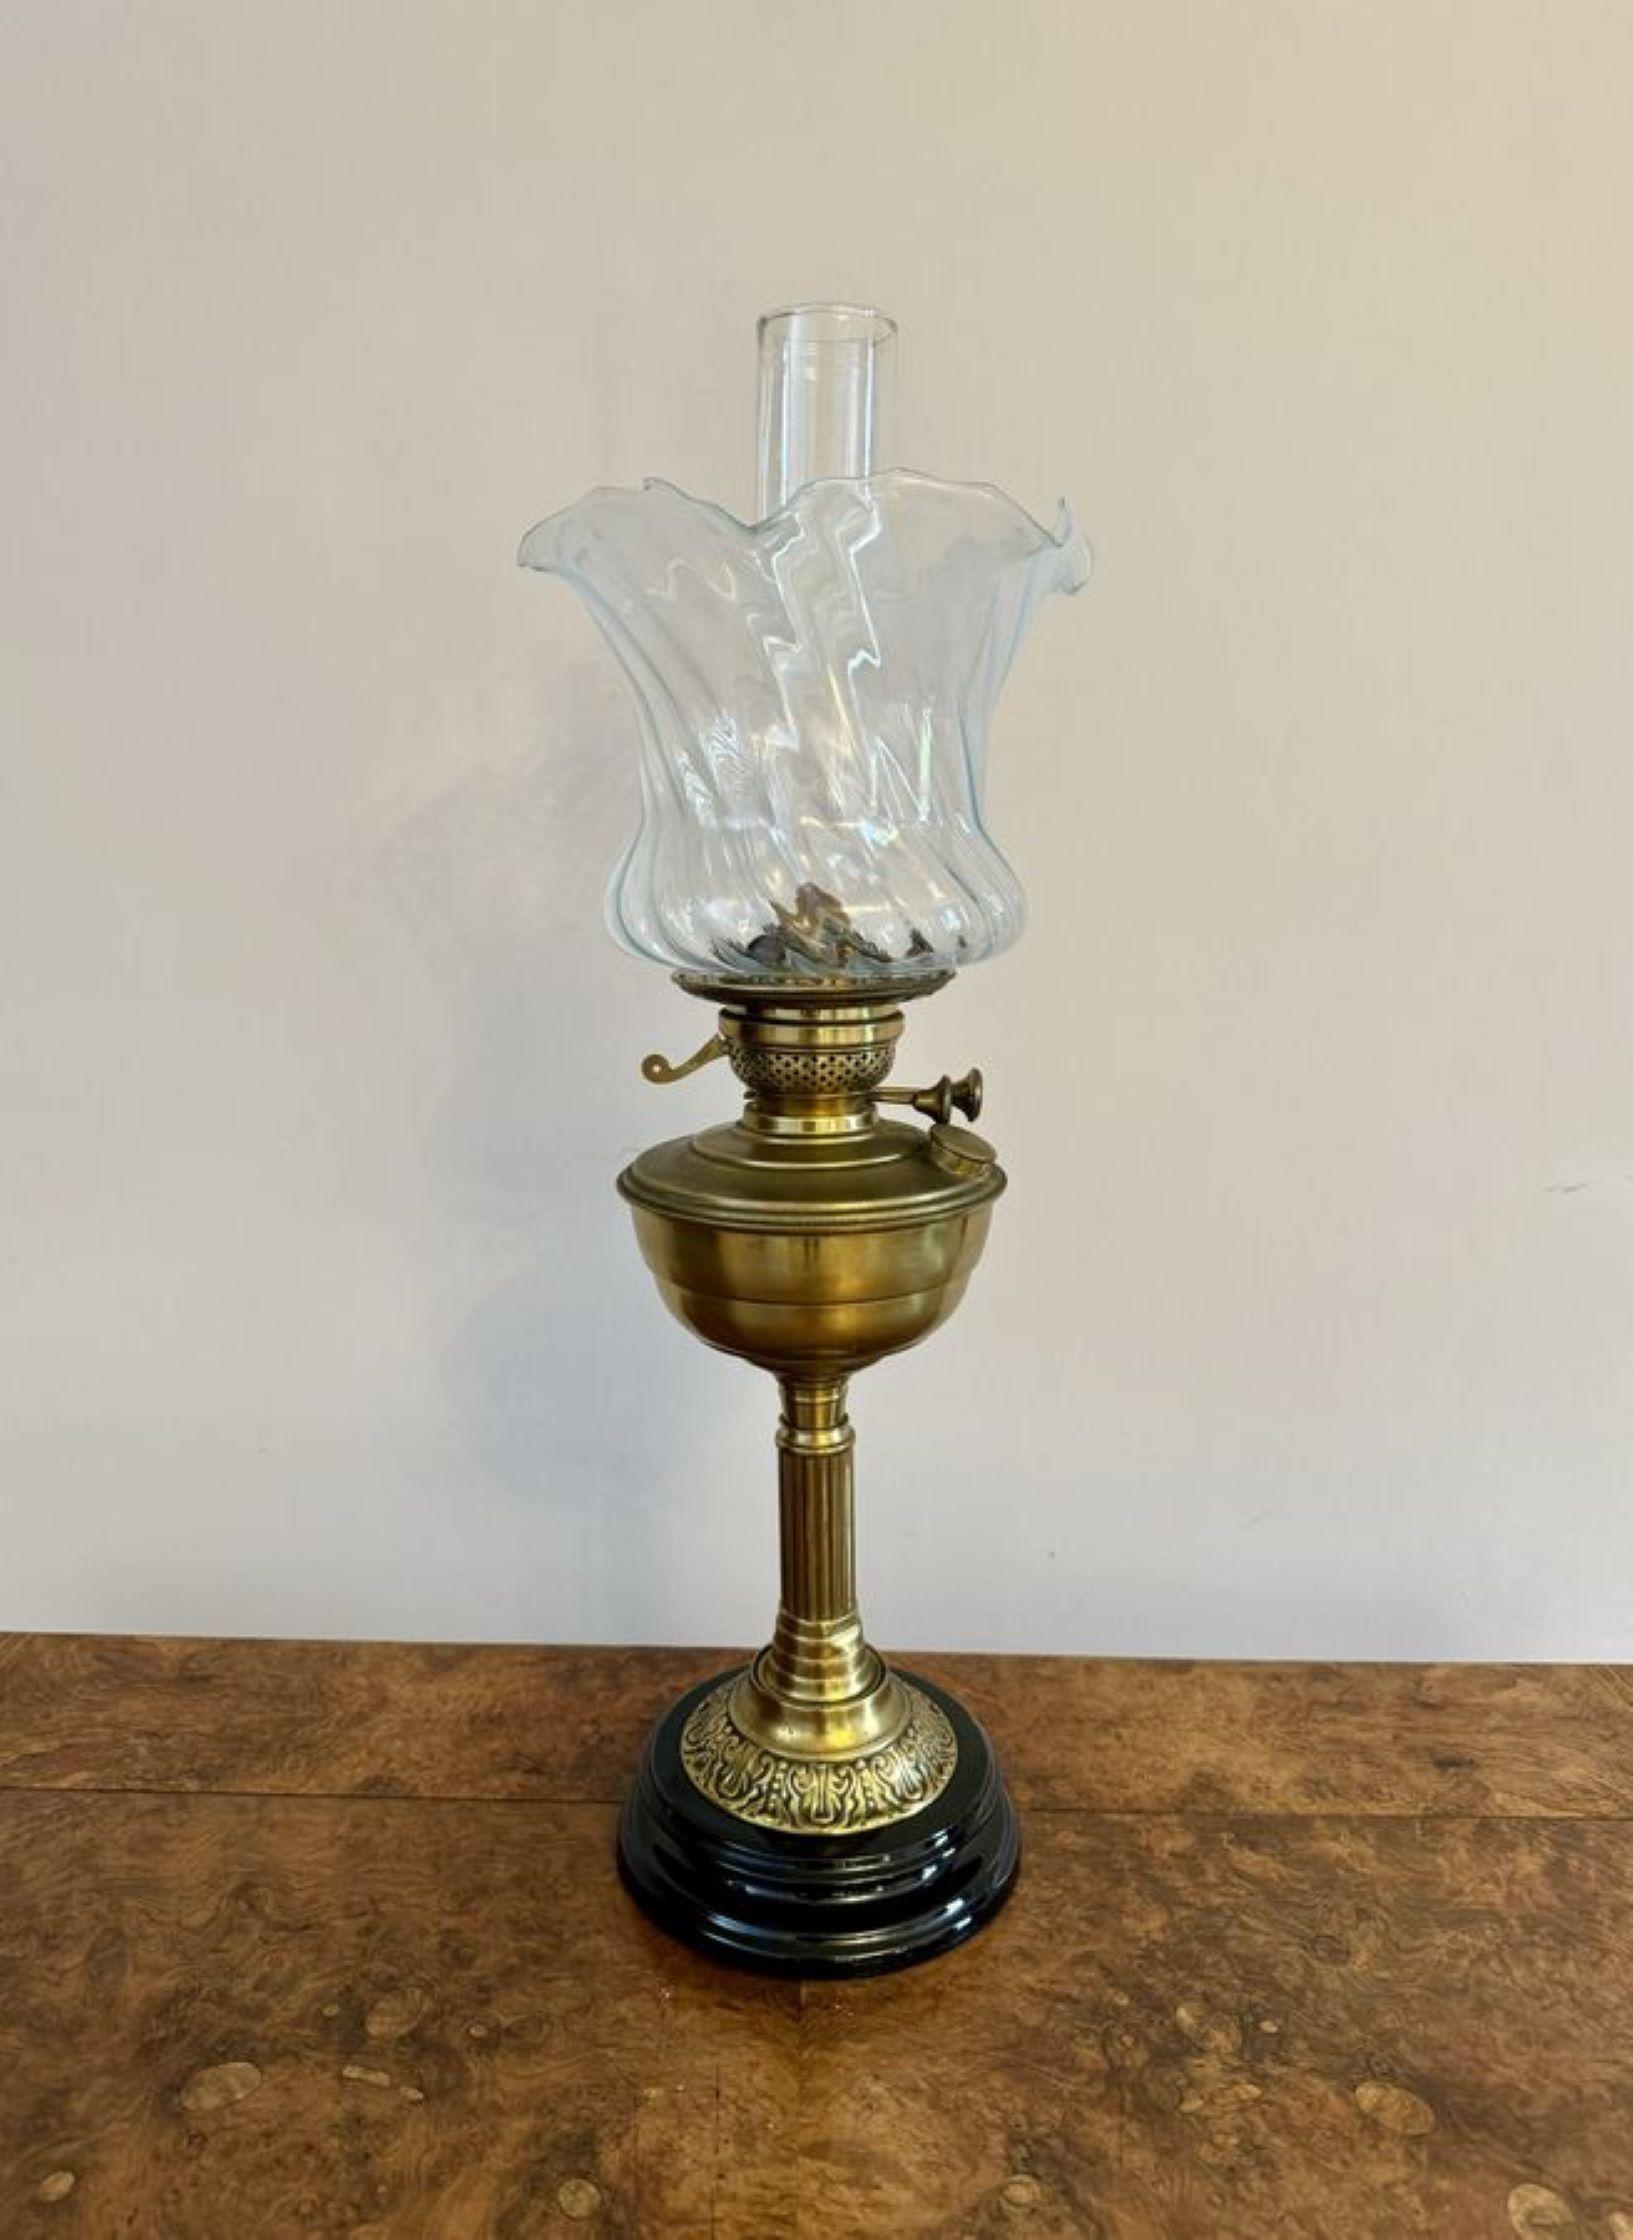 Jolie lampe à huile ancienne de qualité édouardienne, avec son abat-jour en verre d'origine au bord ondulé, une cheminée en verre, un brûleur en laiton, soutenu par une colonne en laiton, le tout reposant sur une base circulaire.

D. 1900